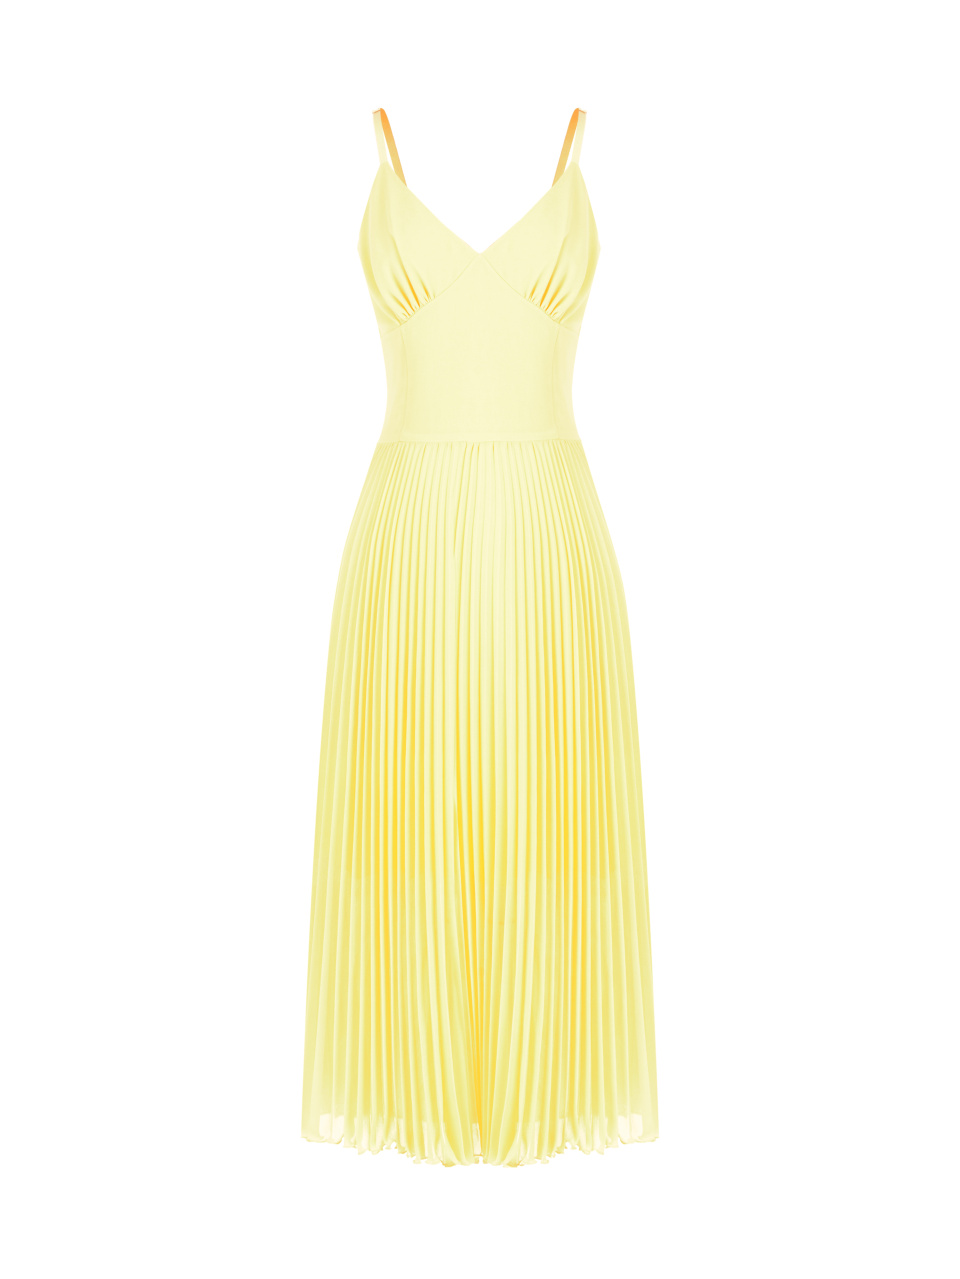 Желтое платье-миди из шифона с плиссировкой, 1